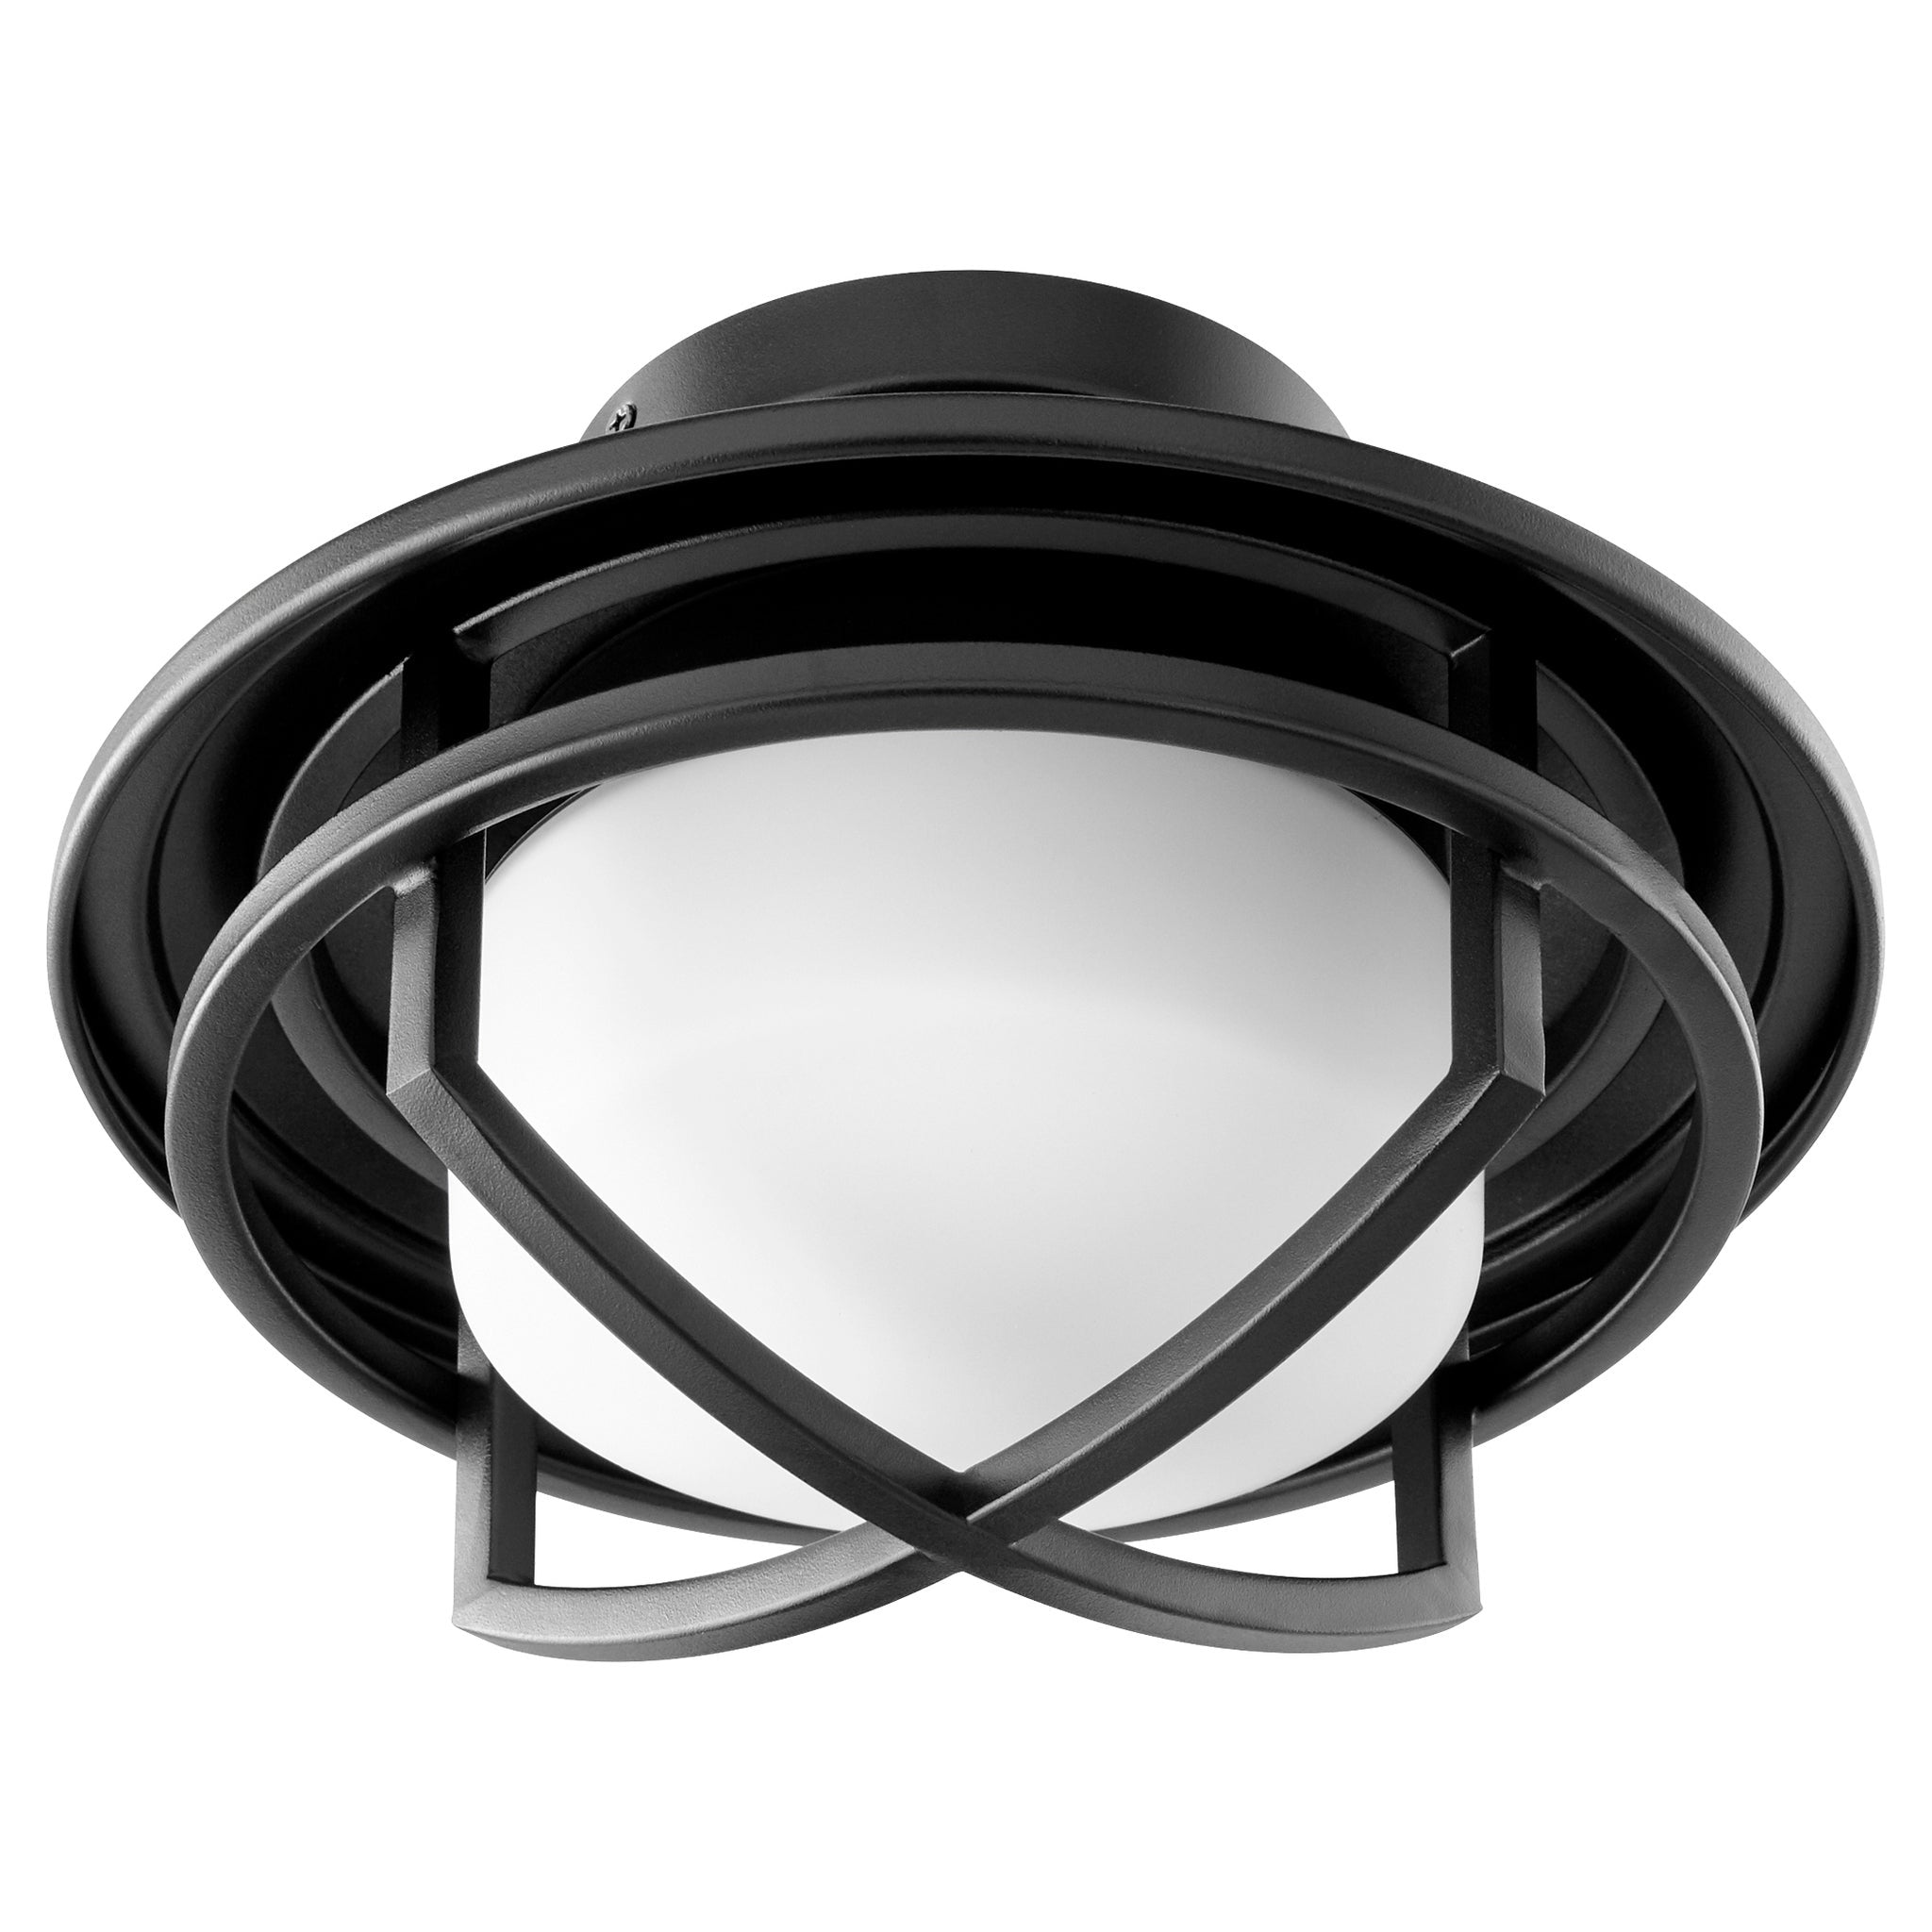 Oxygen FLEET Ceiling Fan LED Light Kit - 3-1084-40 (Aged Brass), 3-1084-15 (Black), 3-1084-24 (Satin Nickel)